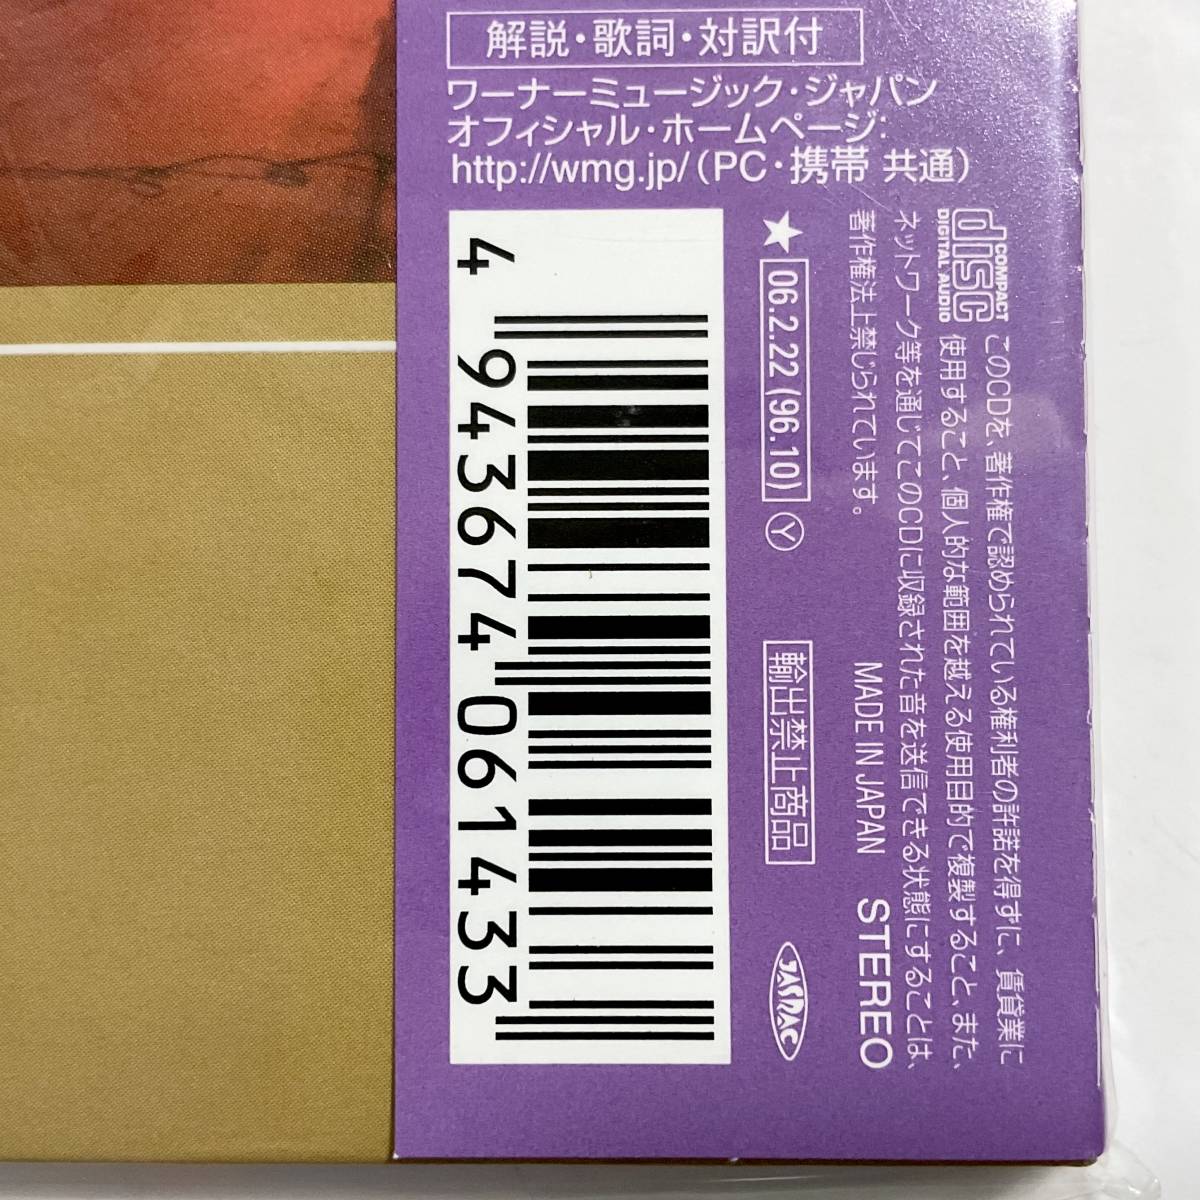  нераспечатанный бумага жакет CD DEEP PURPLE жить * in * Japan совершенно производство ограничение запись WPCR-12256 T017